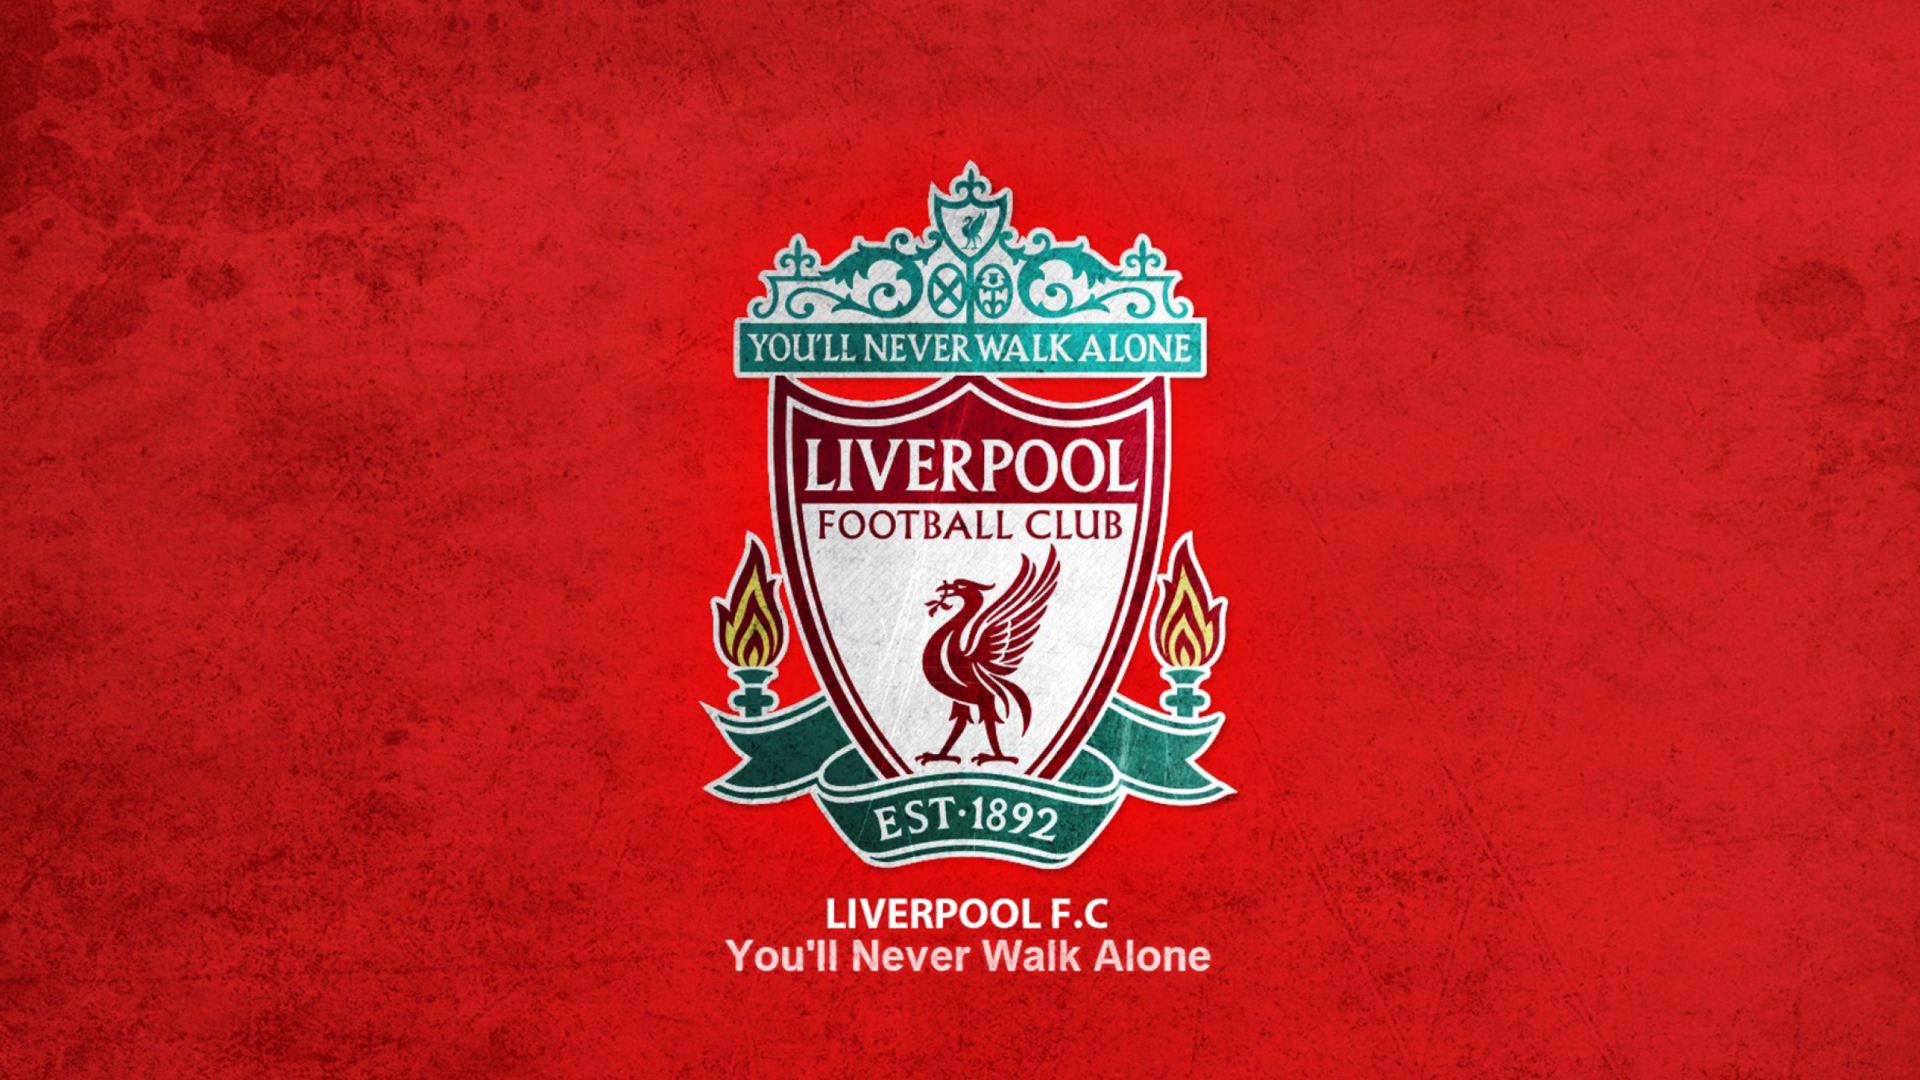 Liverpool Football Club wallpaper 1920x1080